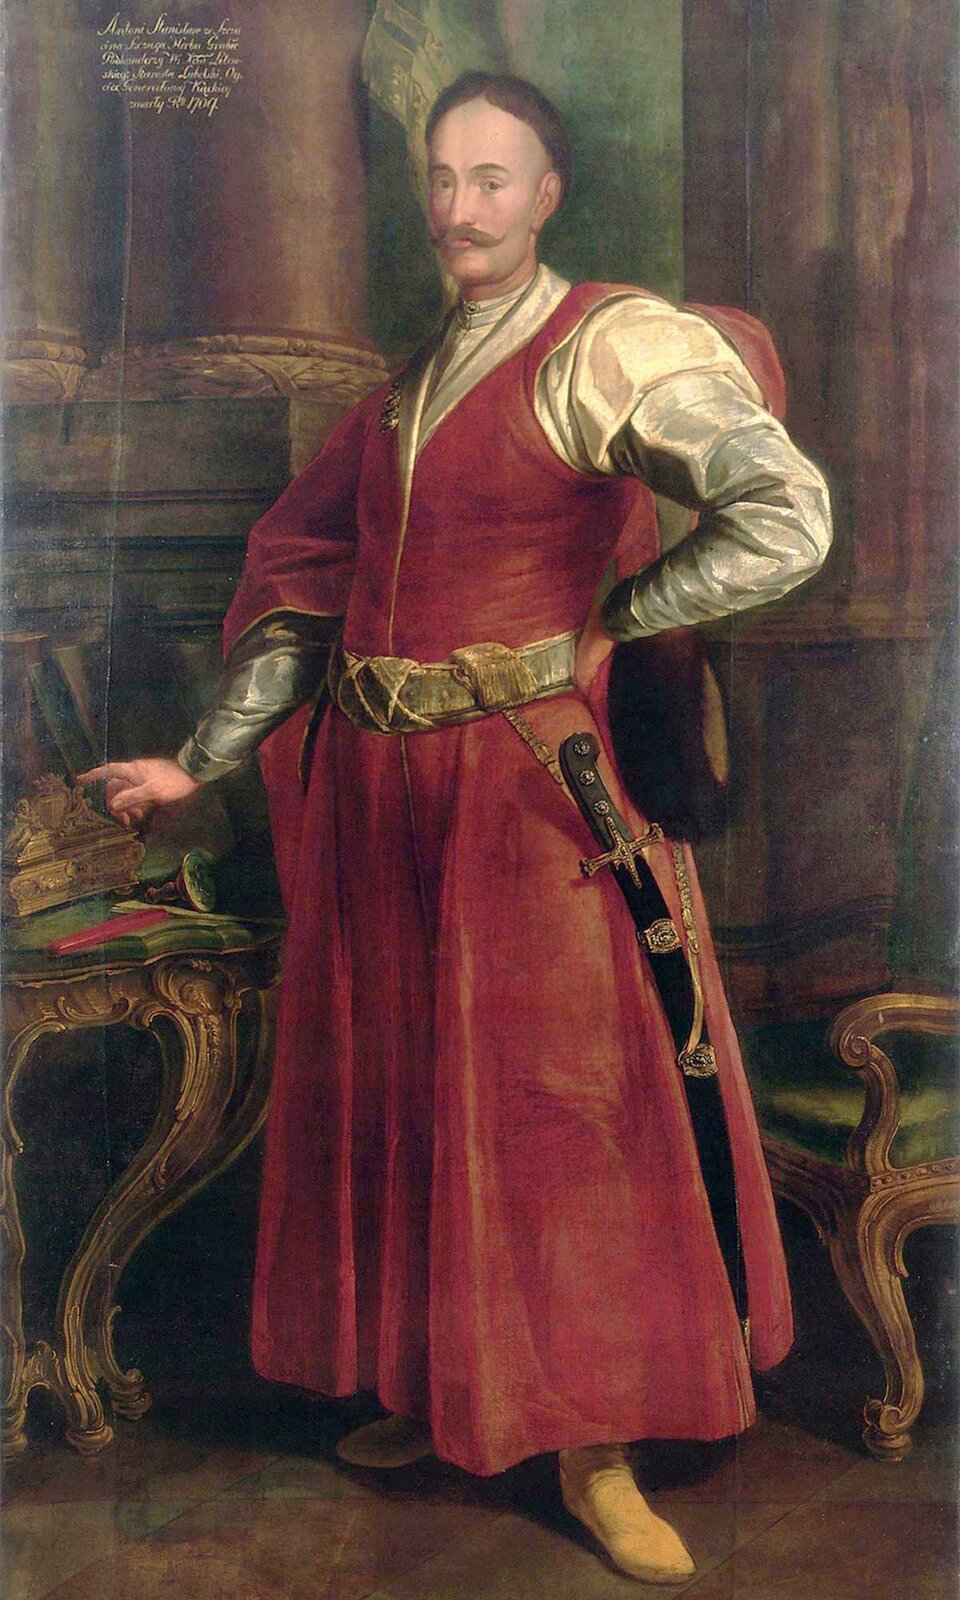 Portret Stanisława Antoniego Szczuki Źródło: Portret Stanisława Antoniego Szczuki, ok. 1735–1740, olej na płótnie, domena publiczna.